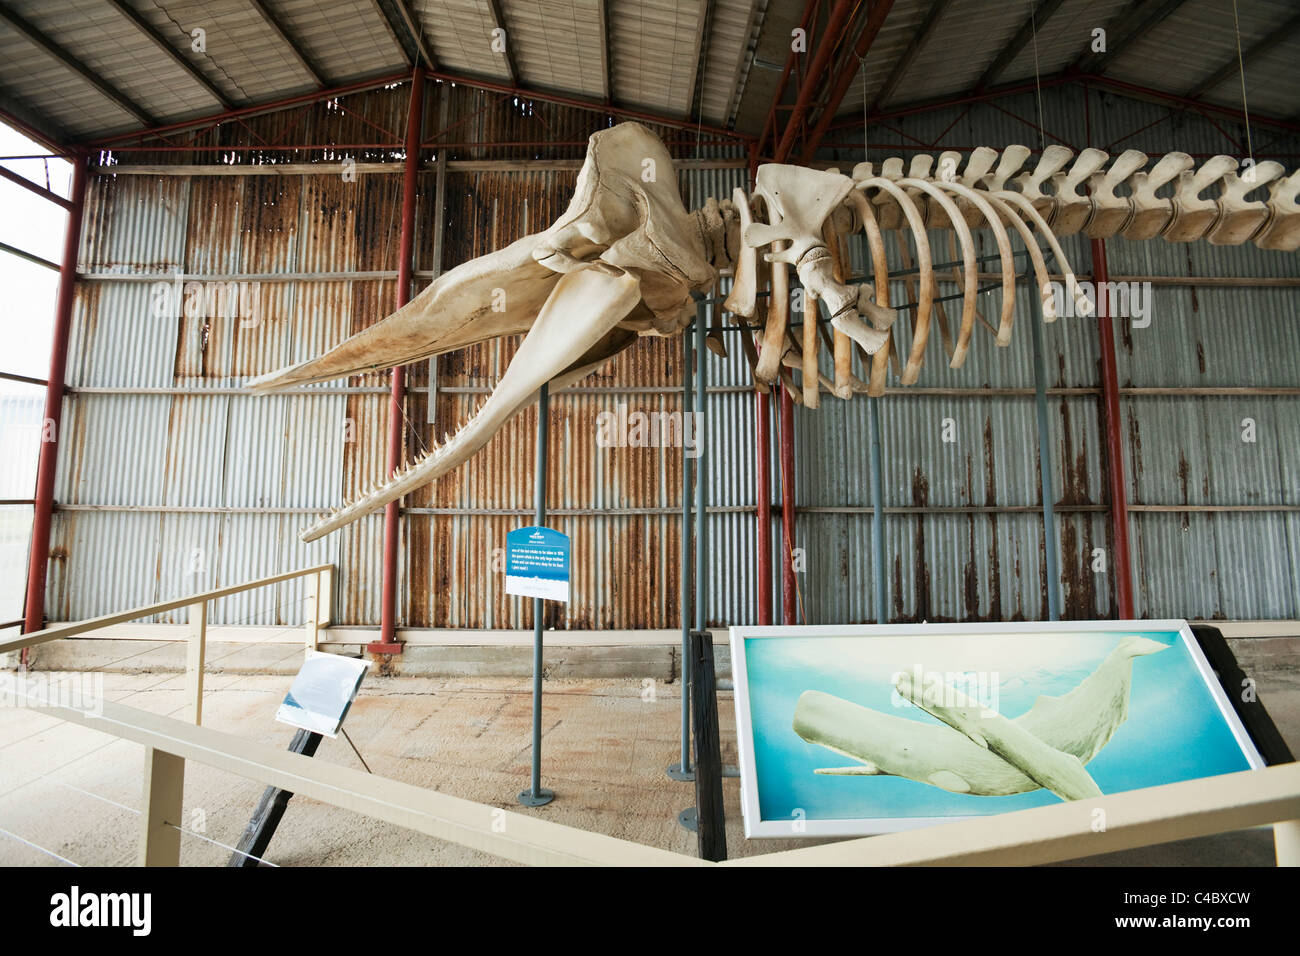 Sperma balena scheletro di balena al museo del mondo. Il francese Bay, Albany, Australia occidentale, Australia Foto Stock